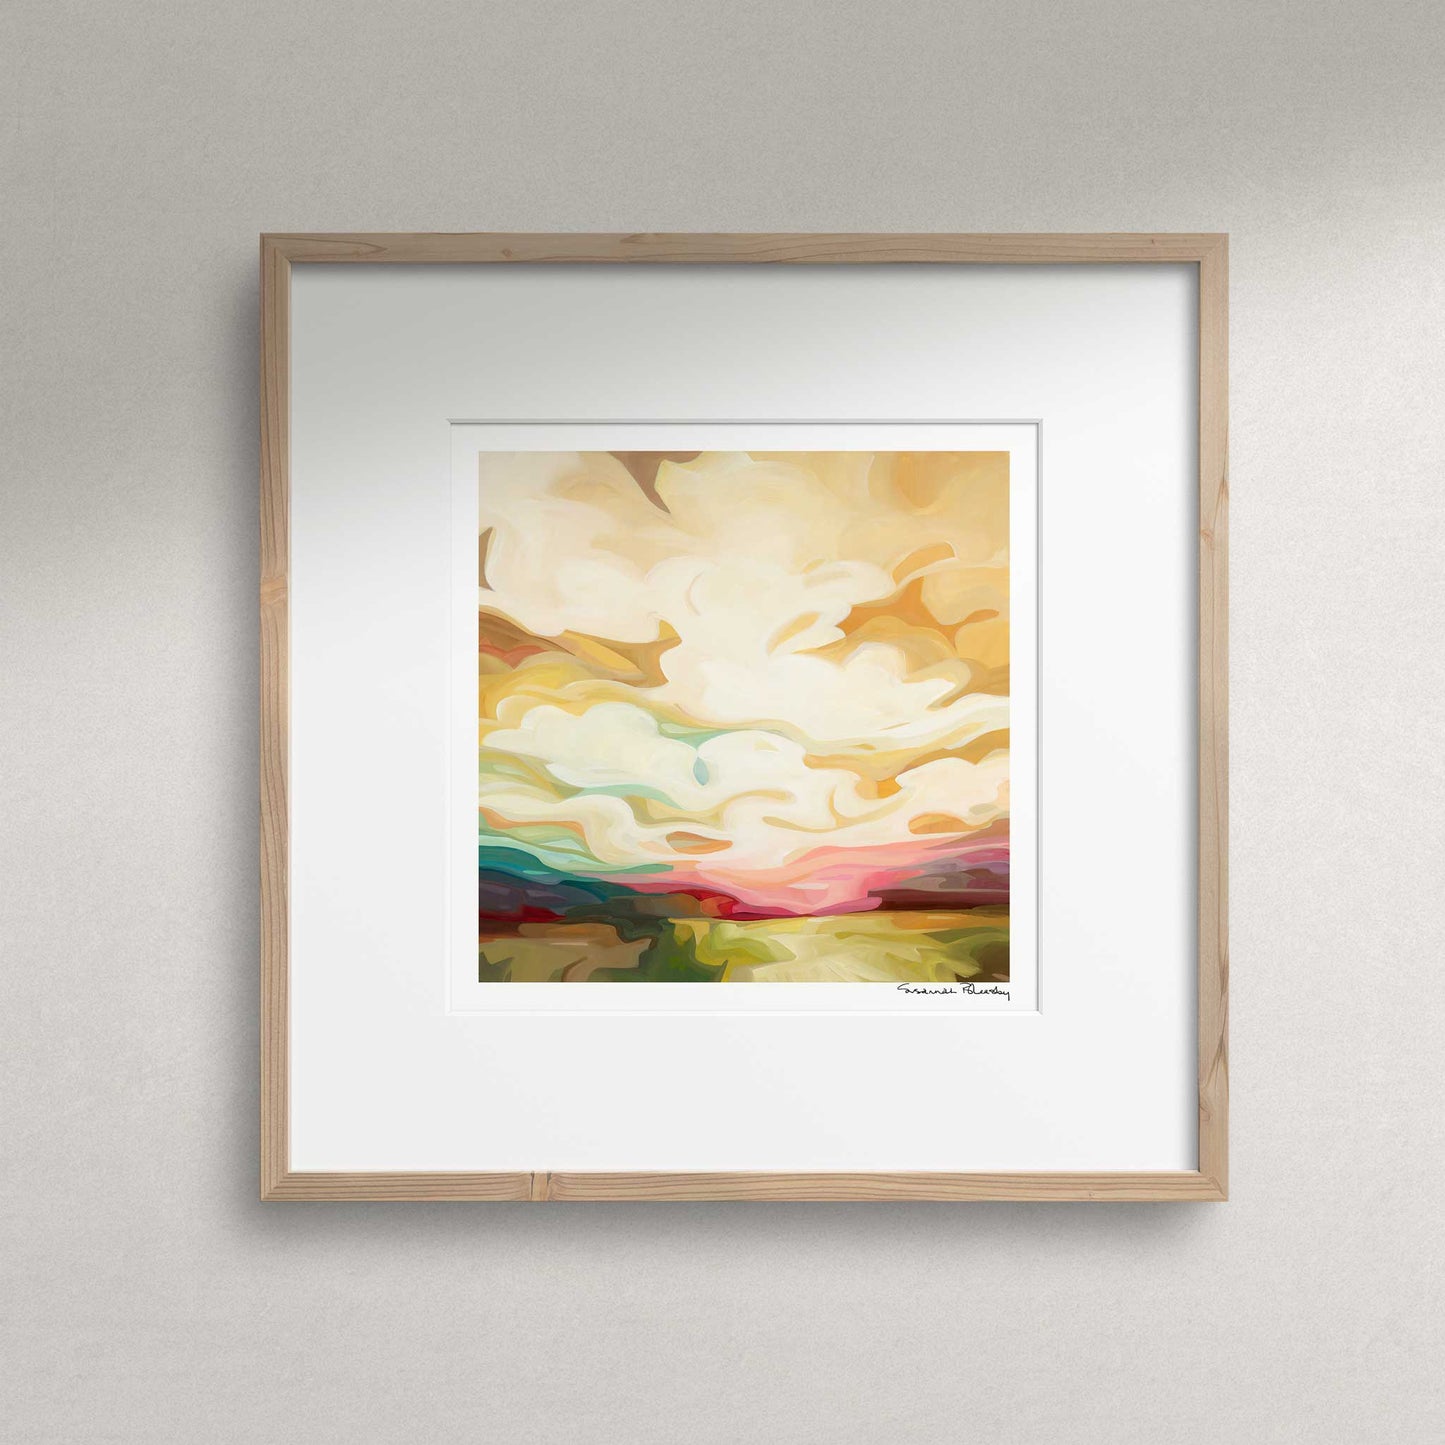 acrylic sky painting of golden sunrise as framed art print wall art by artist Susannah Bleasby